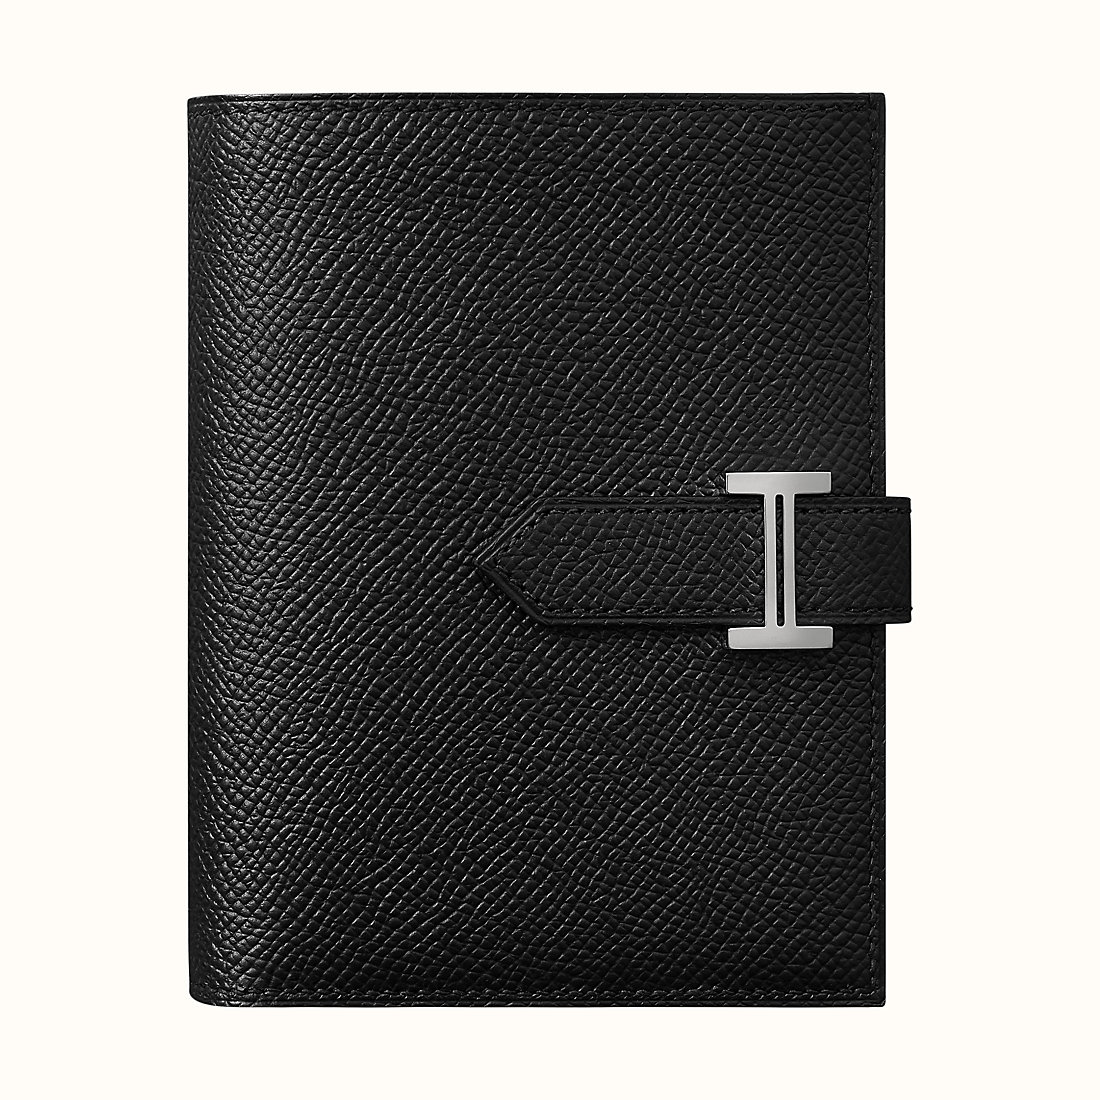 Hermes Bearn Compact wallet CK89 Noir Epsom calfskin